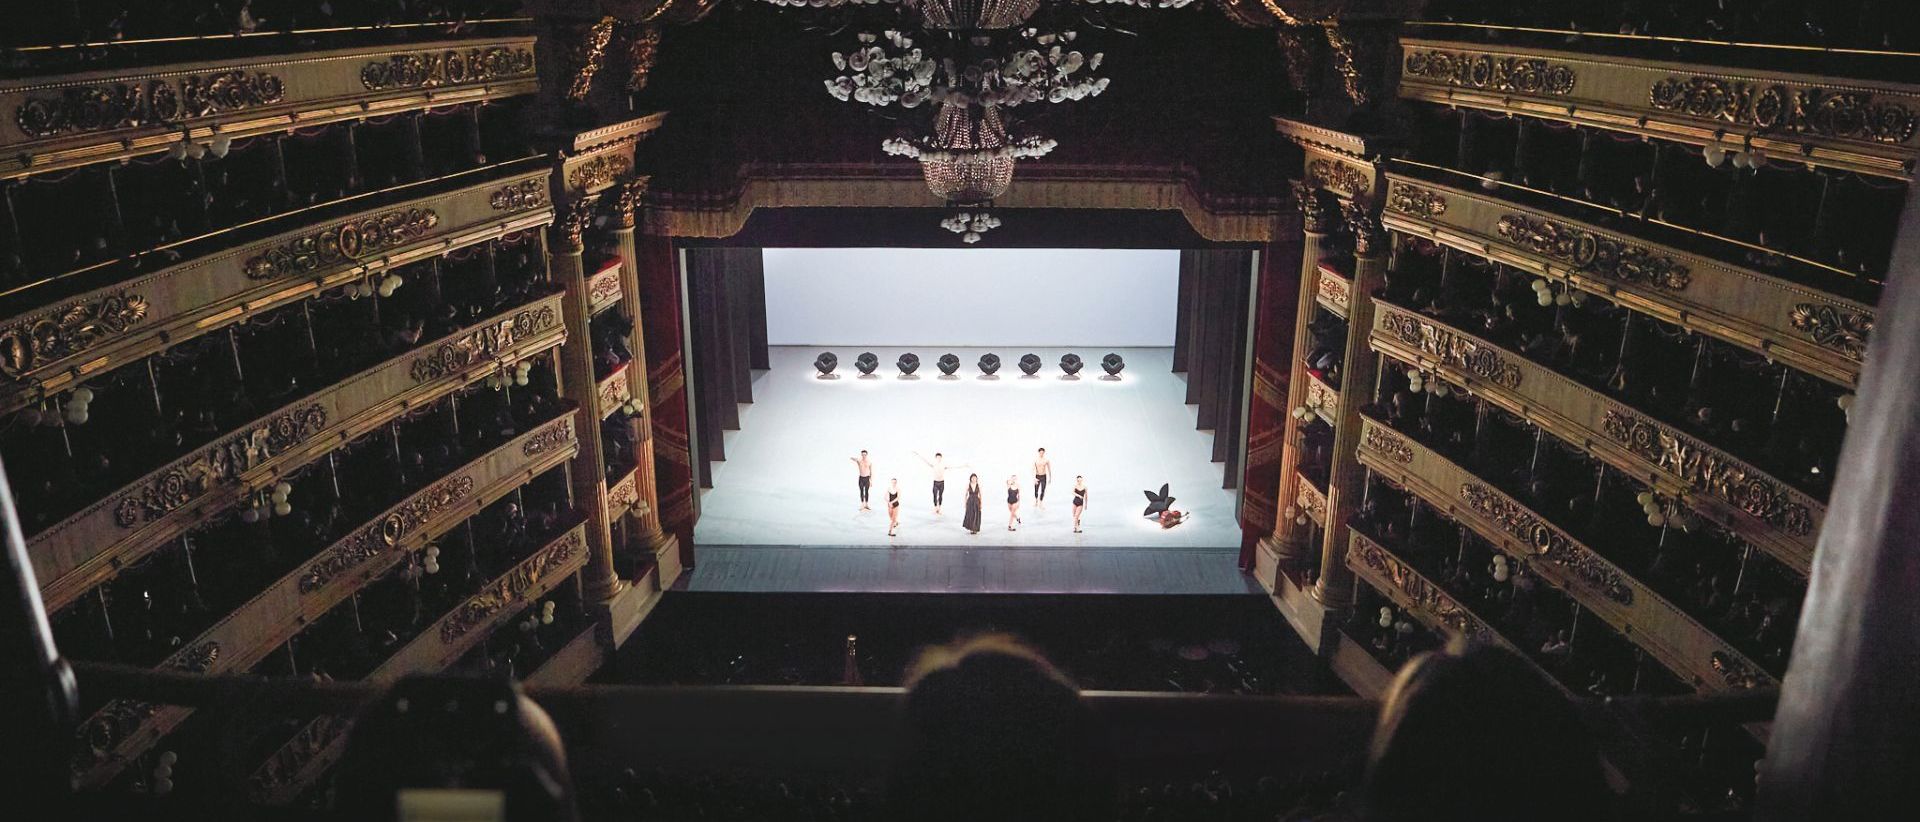  Teatro alla Scala. Un’immagine del balletto “Largo: giardino con la luna piena”, ideato da Matteo Levaggi con suggestione scenografica dell’artista Samantha Stella. 